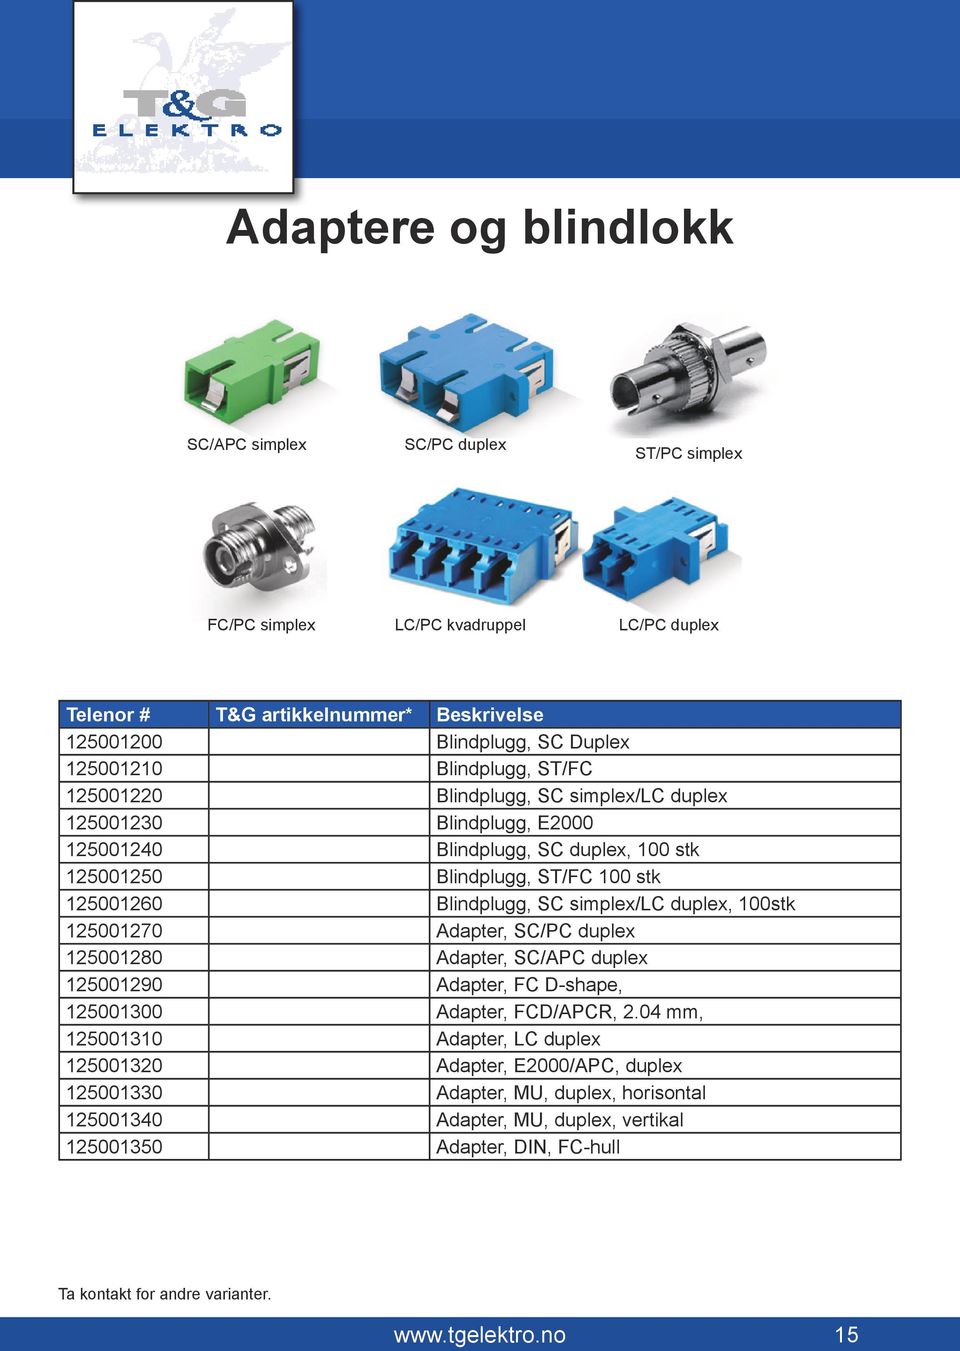 duplex, 100stk 125001270 Adapter, SC/PC duplex 125001280 Adapter, SC/APC duplex 125001290 Adapter, FC D-shape, 125001300 Adapter, FCD/APCR, 2.